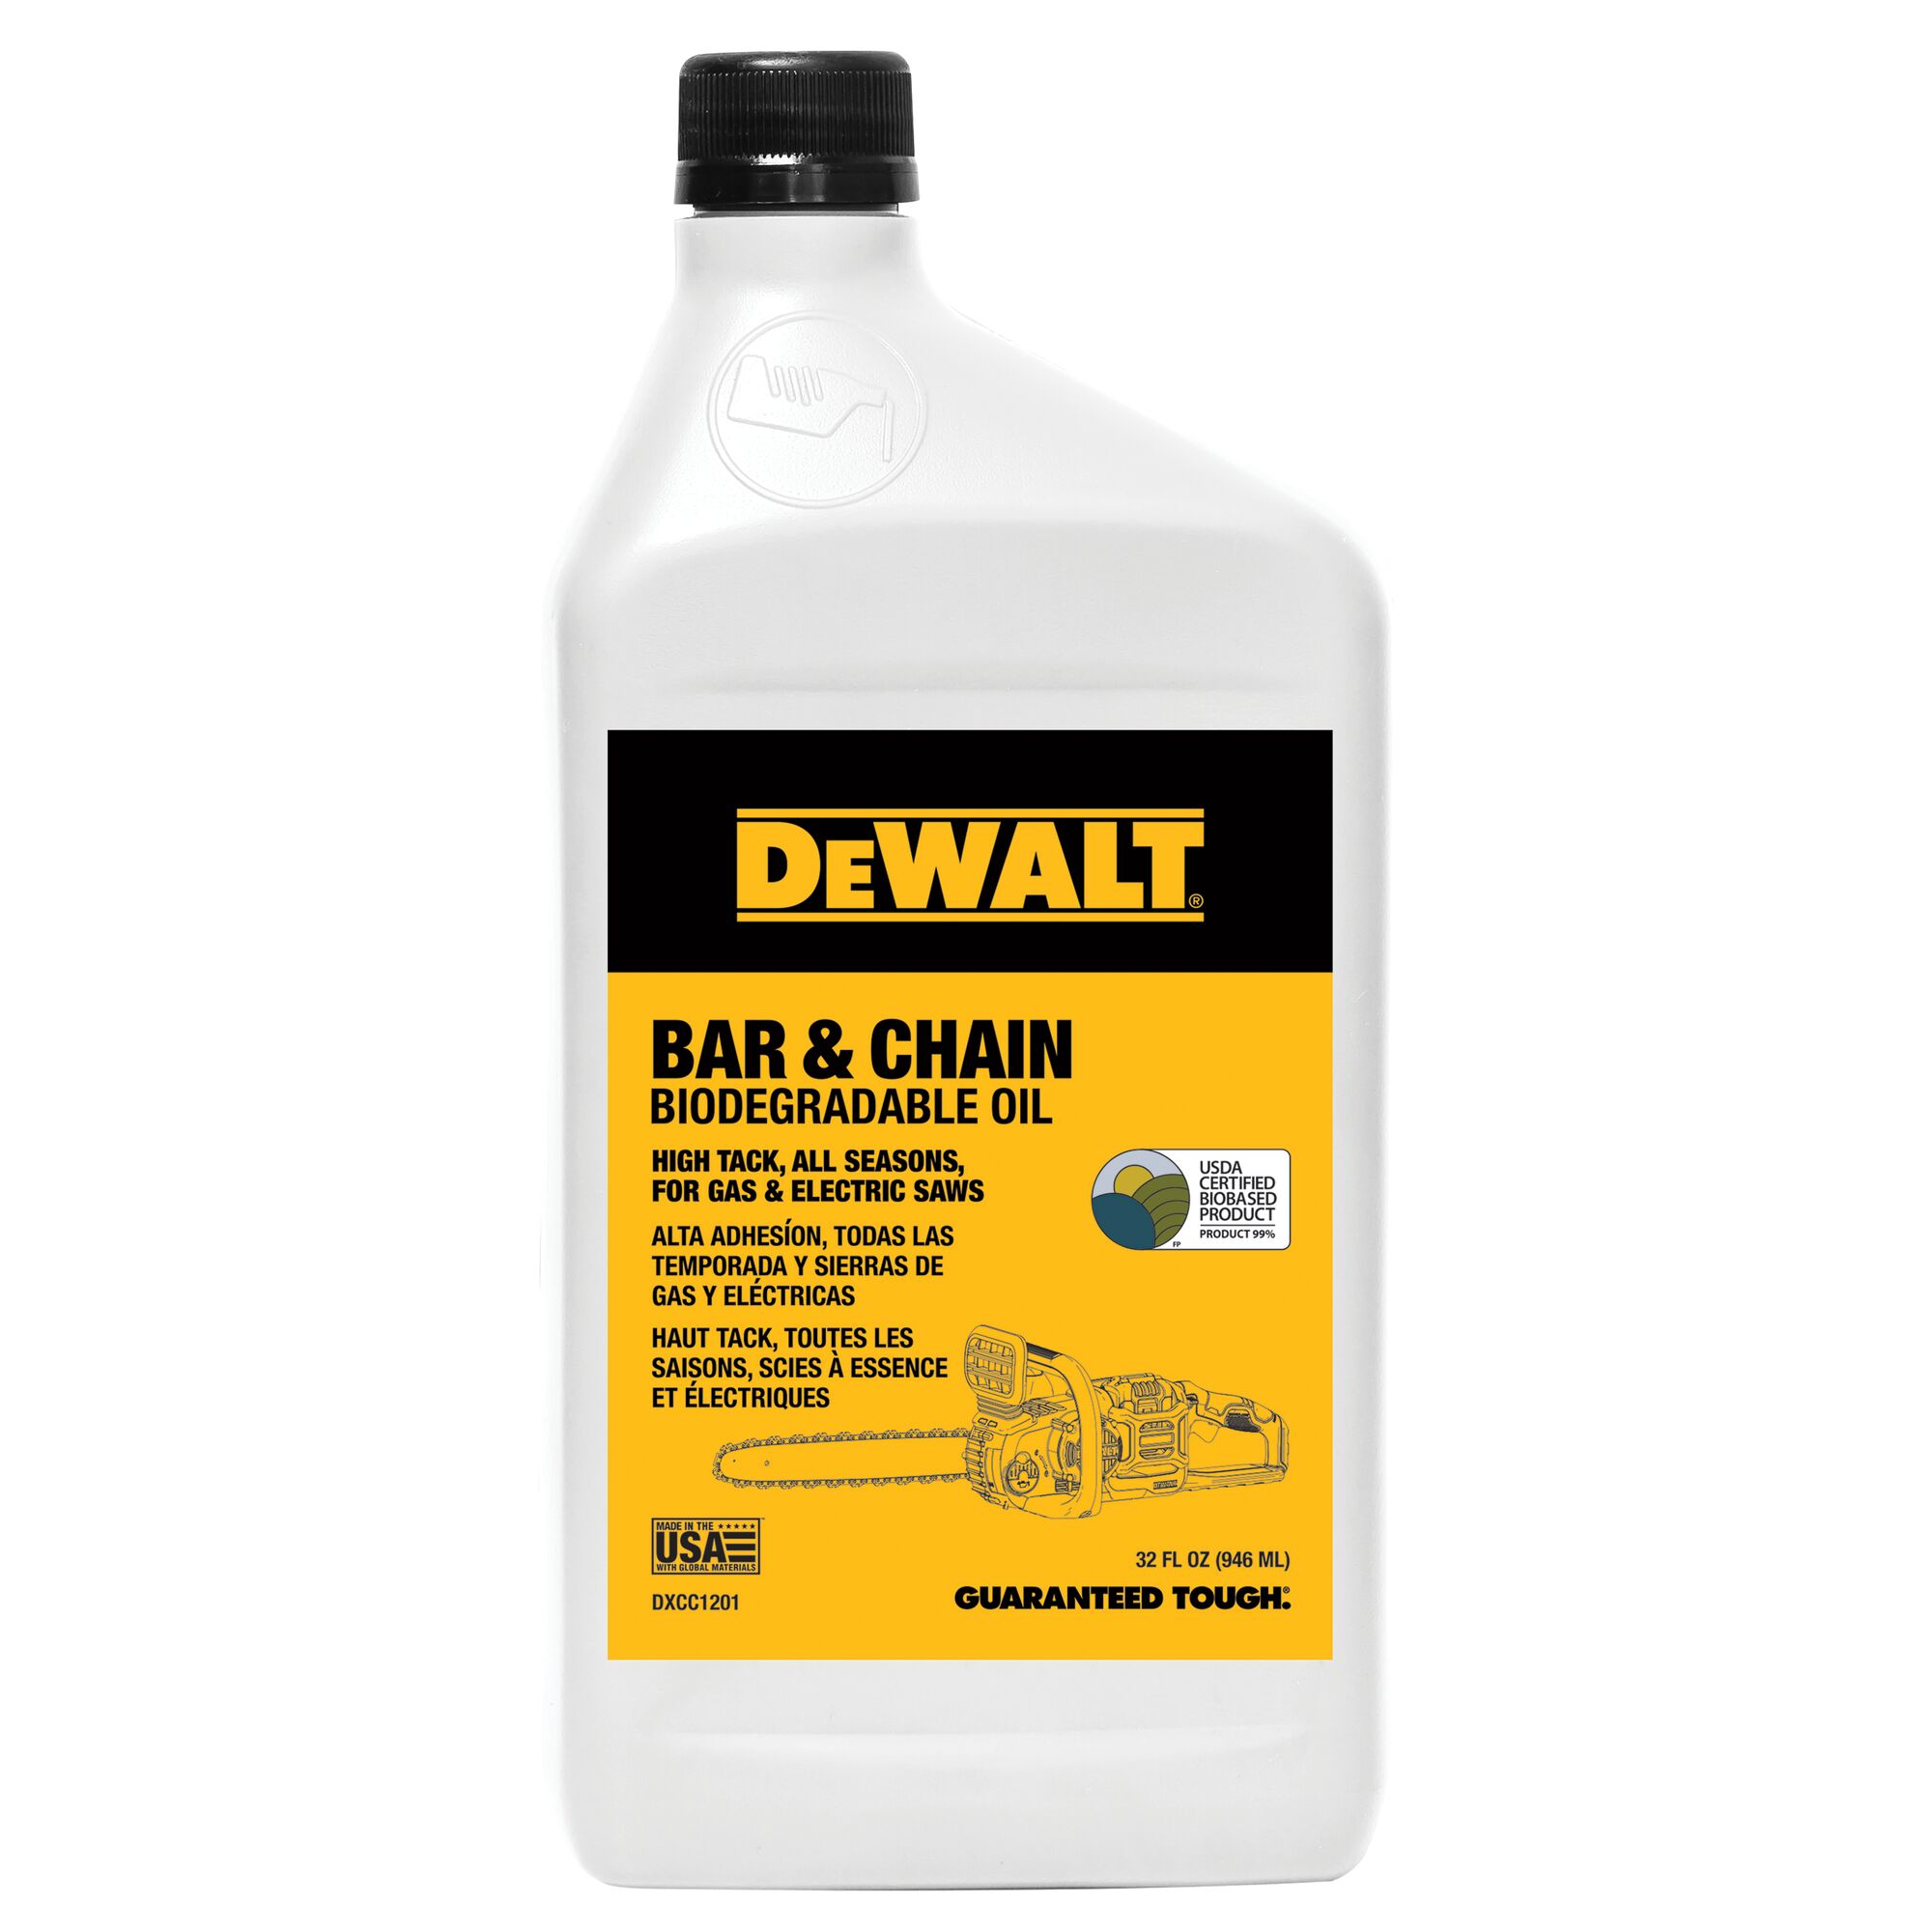 DEWALT Biodegradable Chainsaw Oil 32oz